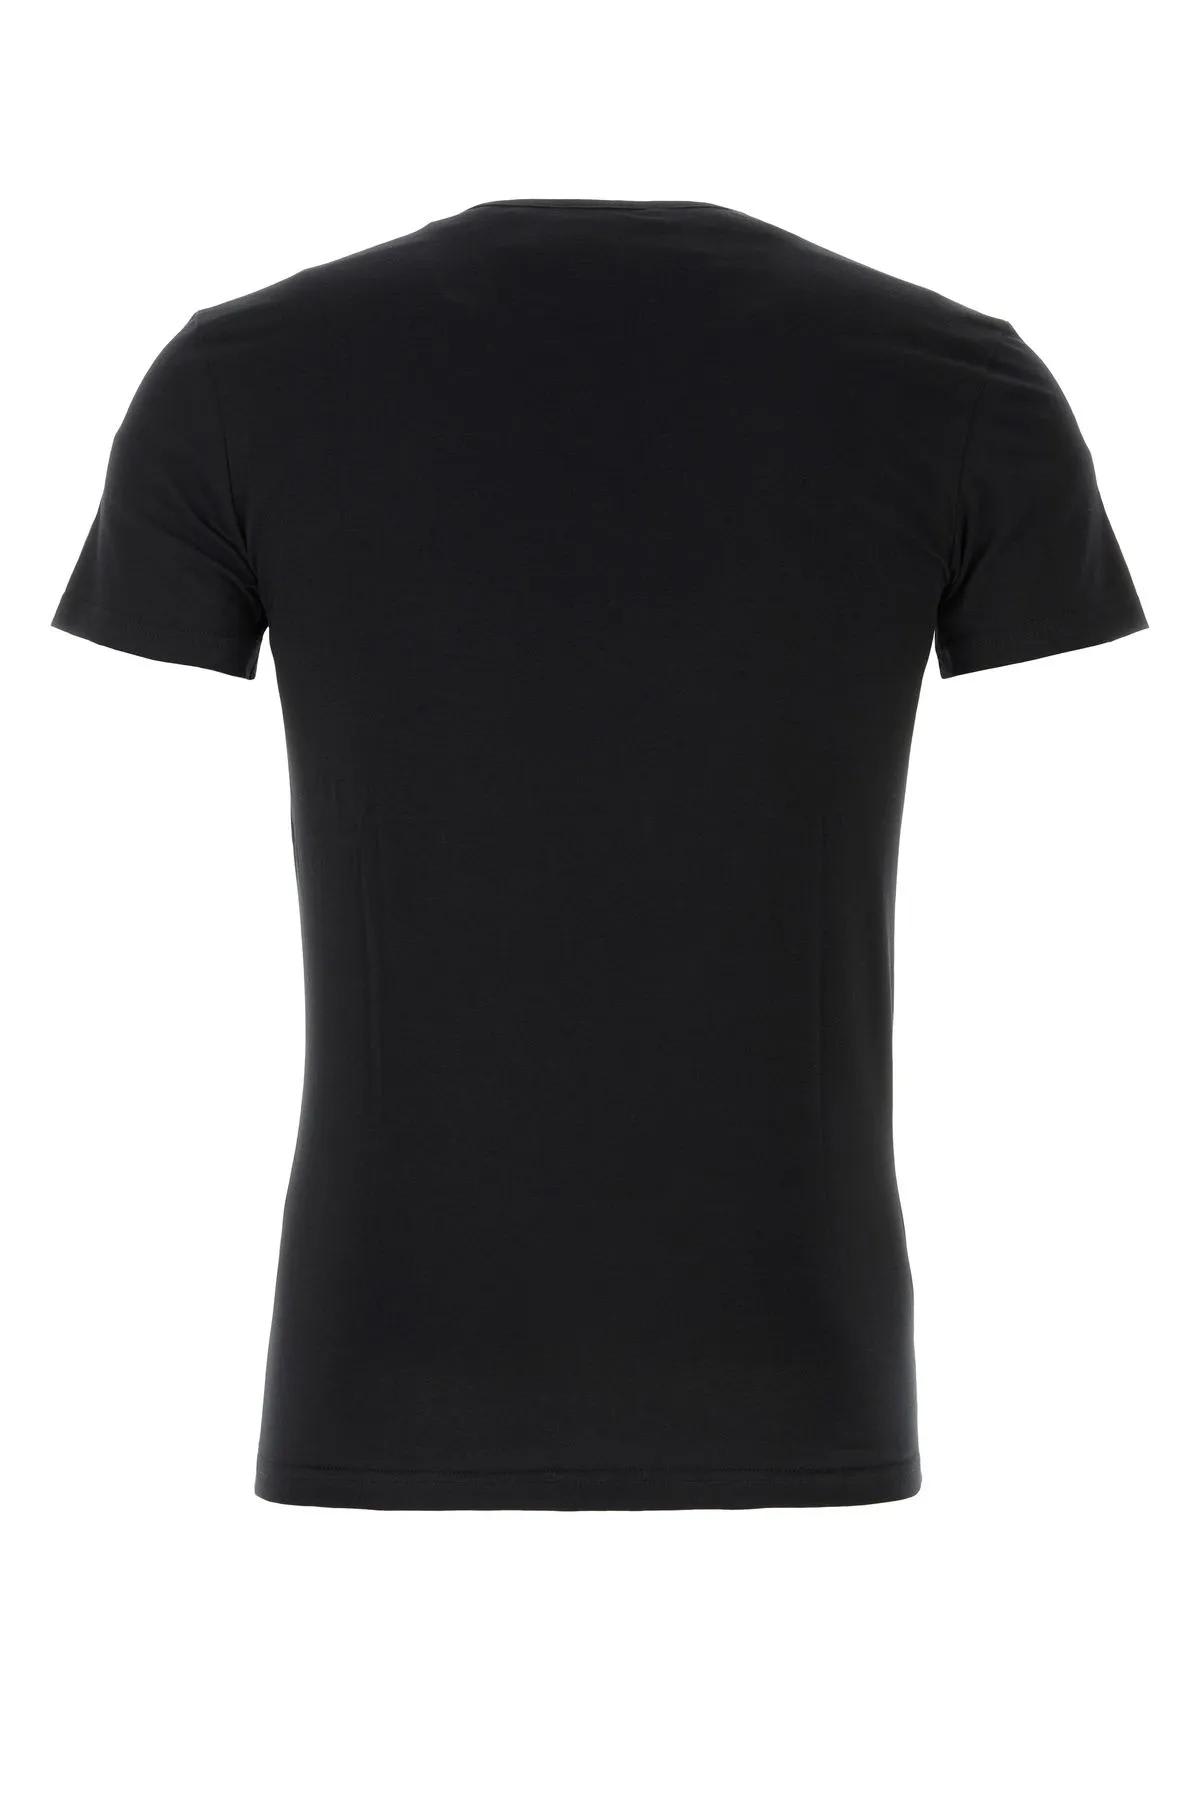 Shop Versace Black Stretch Cotton T-shirt